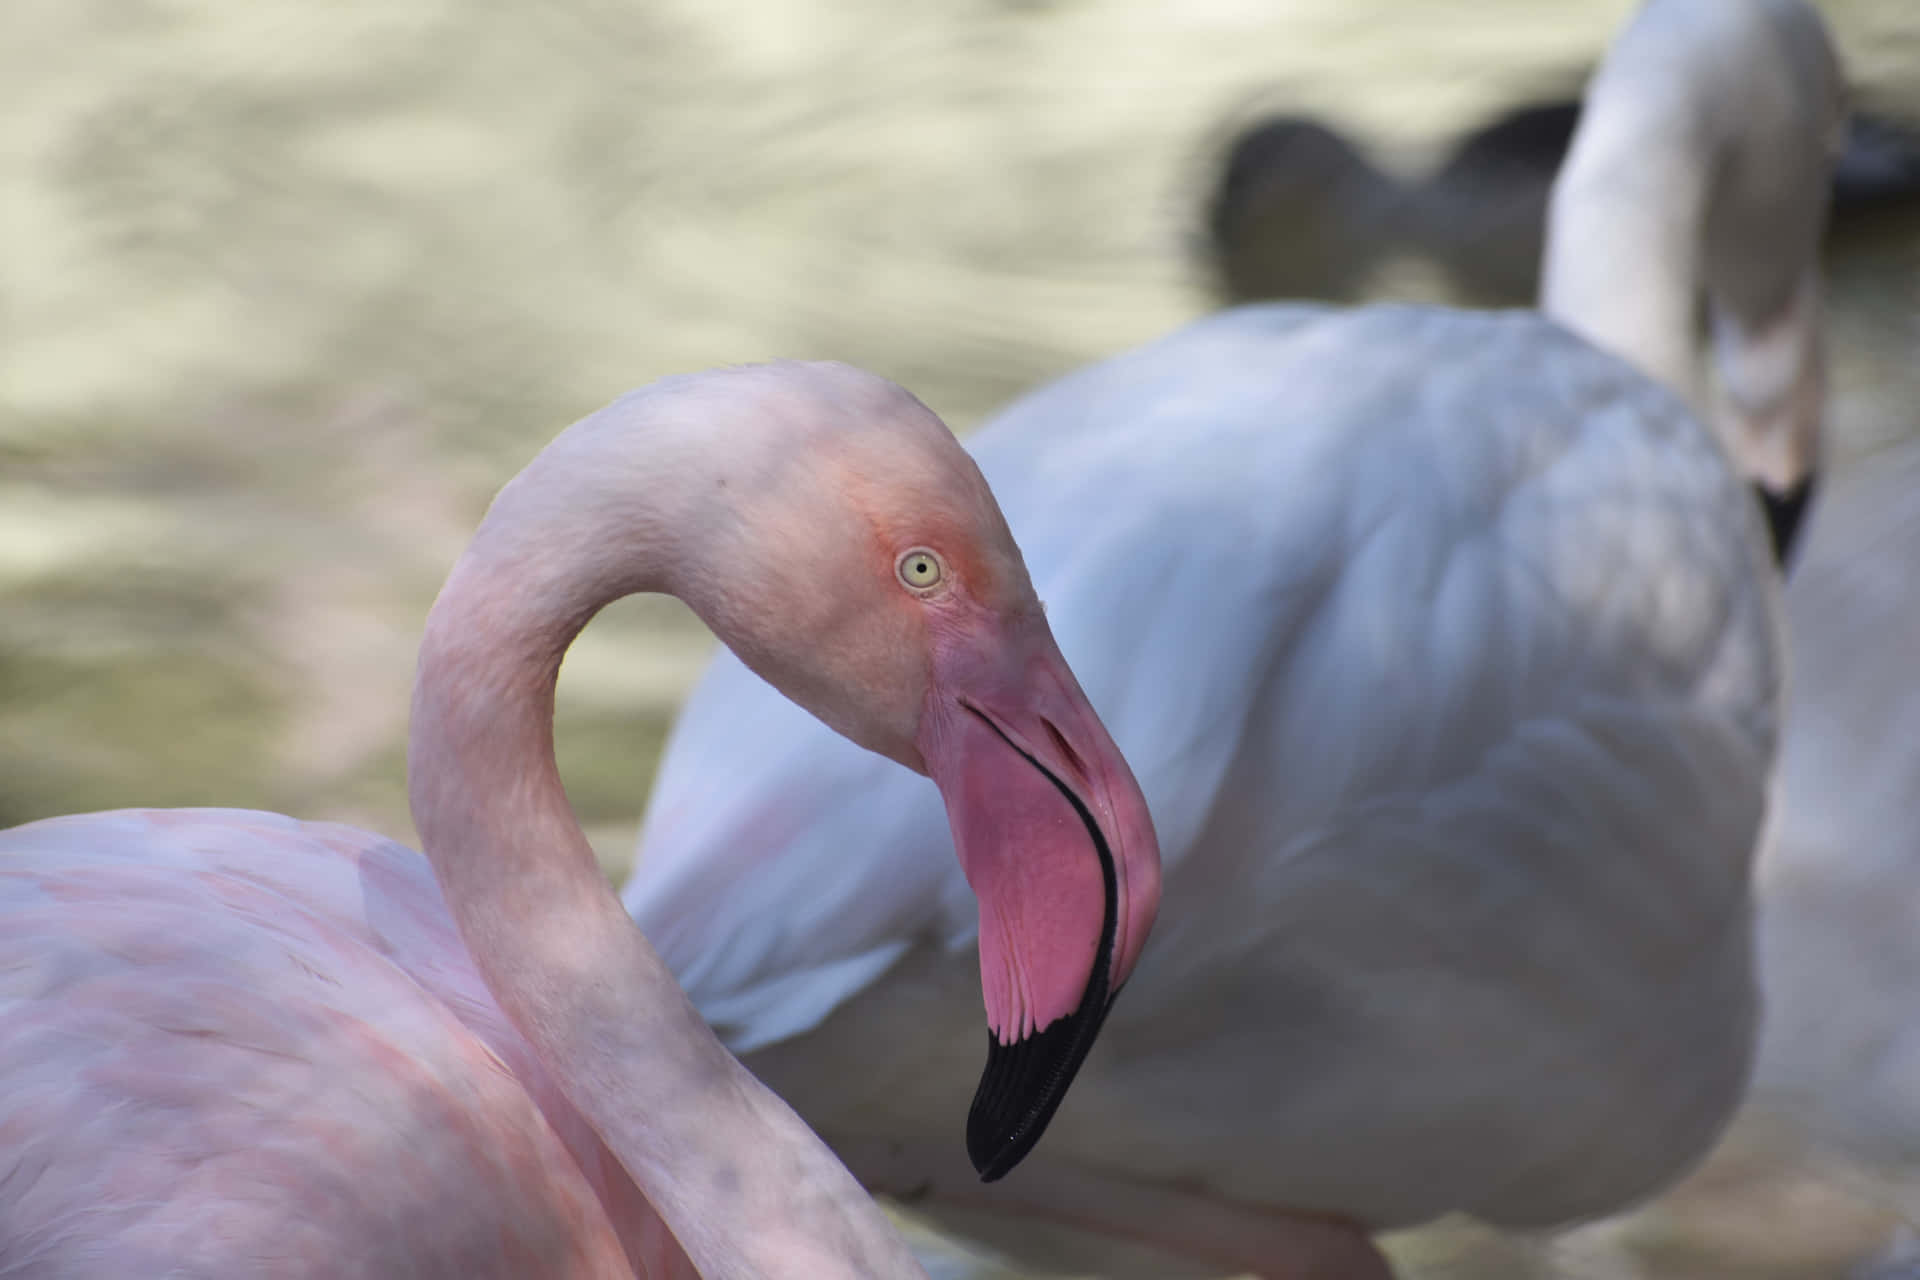 Enmagnifik Flamingo Poserar Graciöst I Sin Naturliga Miljö.